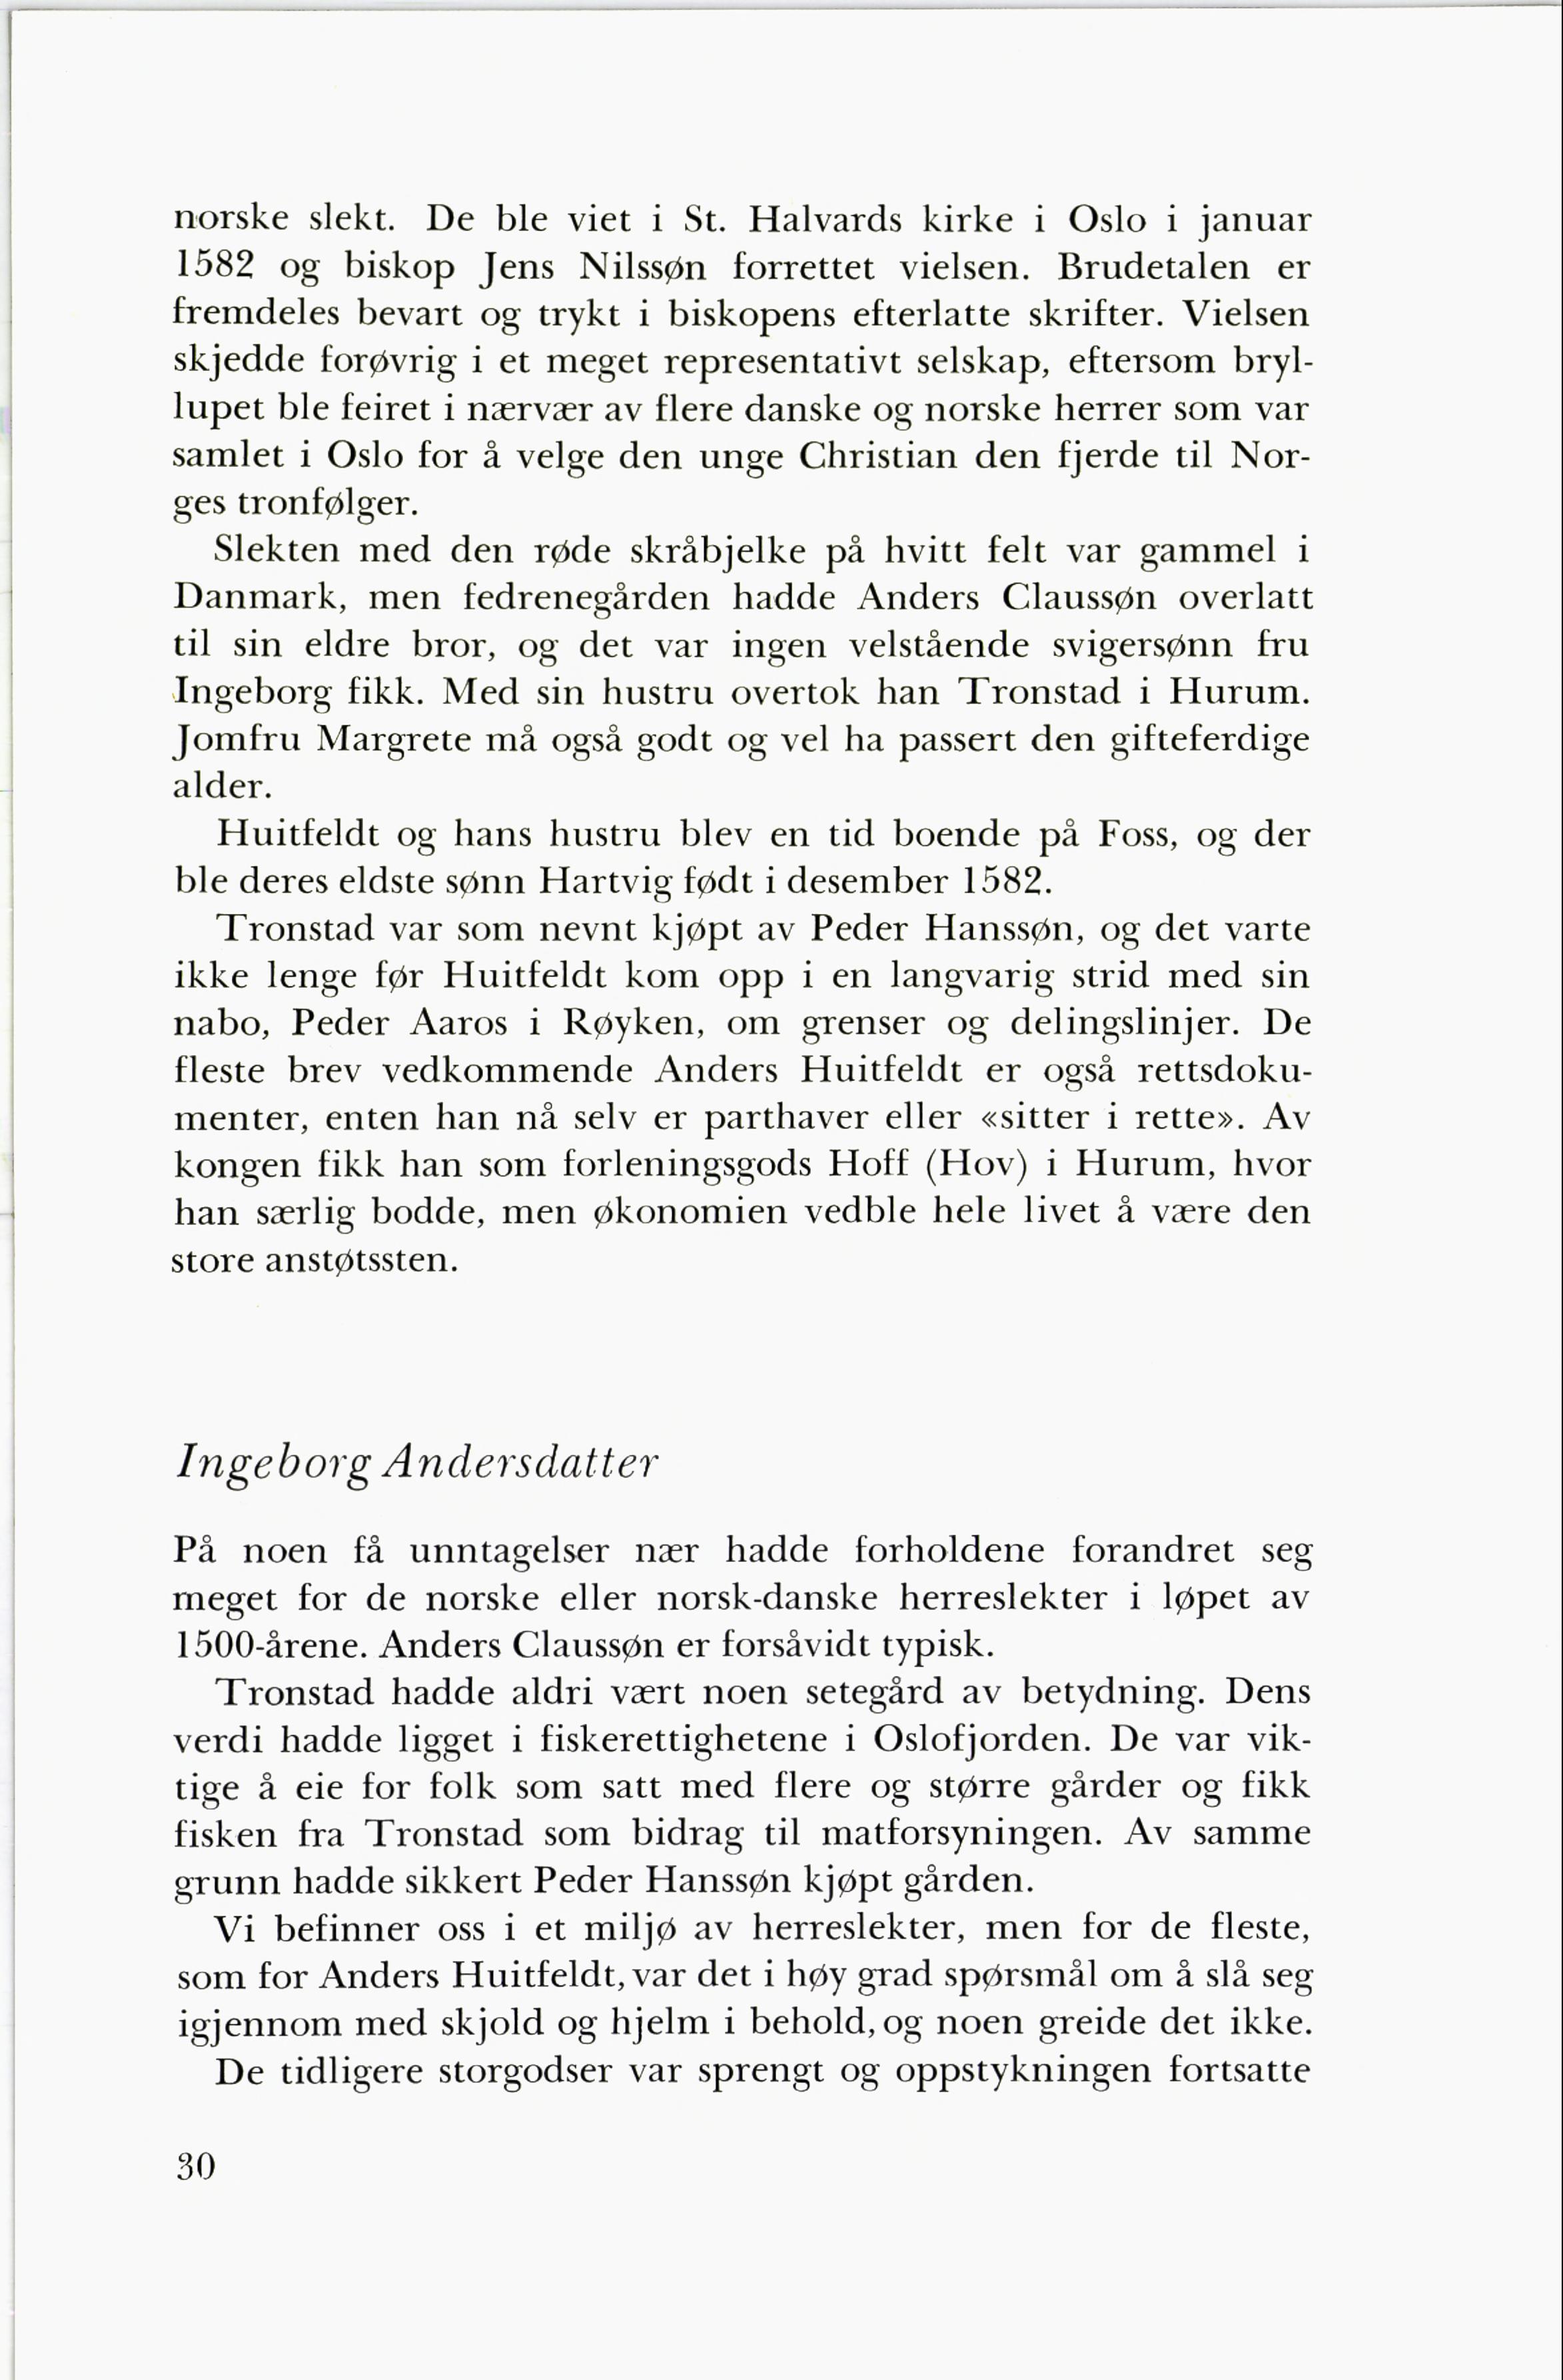 Grener av Eiker-slekten Wiborg (Yngvar Hauge, 1966) - Side 30-47.pdf